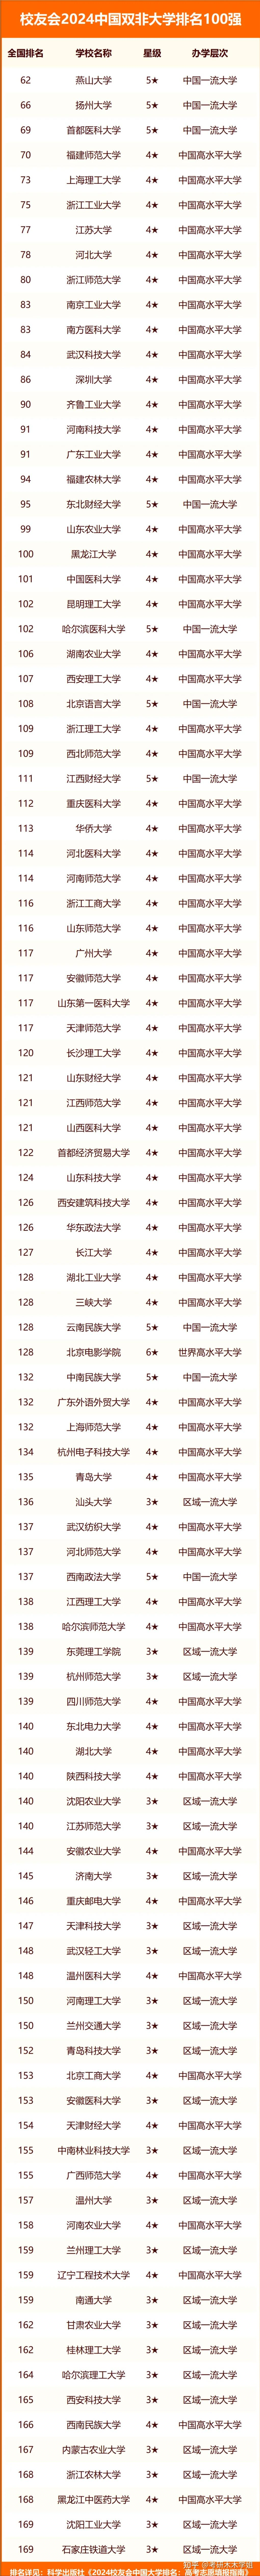 软科只有10所,例如杭州电子科技大学,软科排名双非前十,校友会排名都